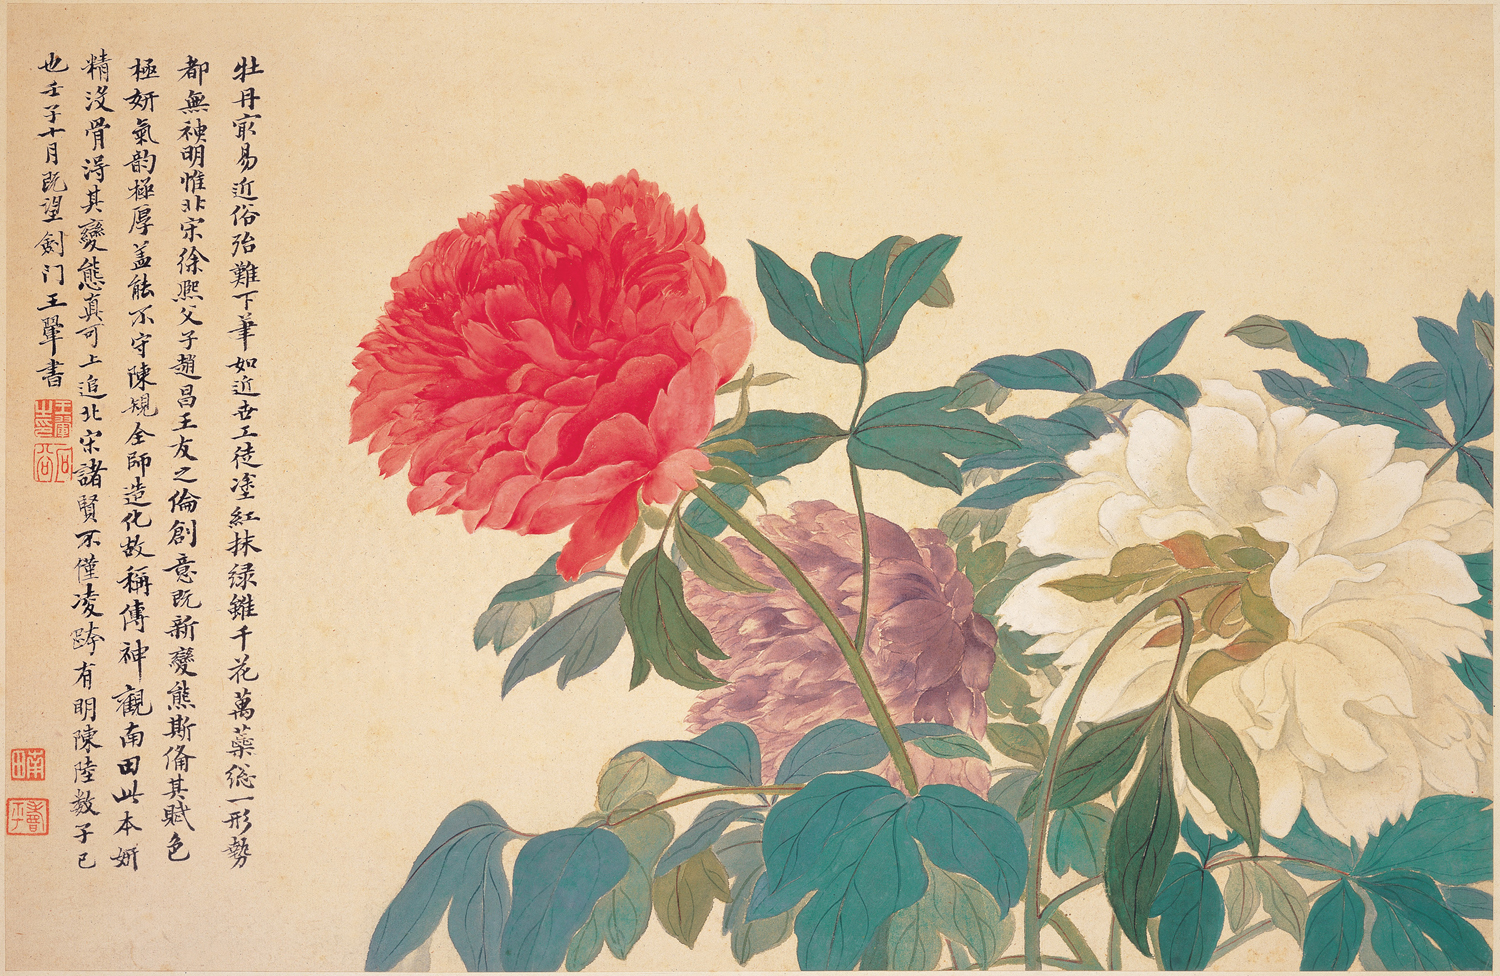 牡丹 by Yun Shou-p'ing - 17世紀 - 28.5 x 43.0 cm 